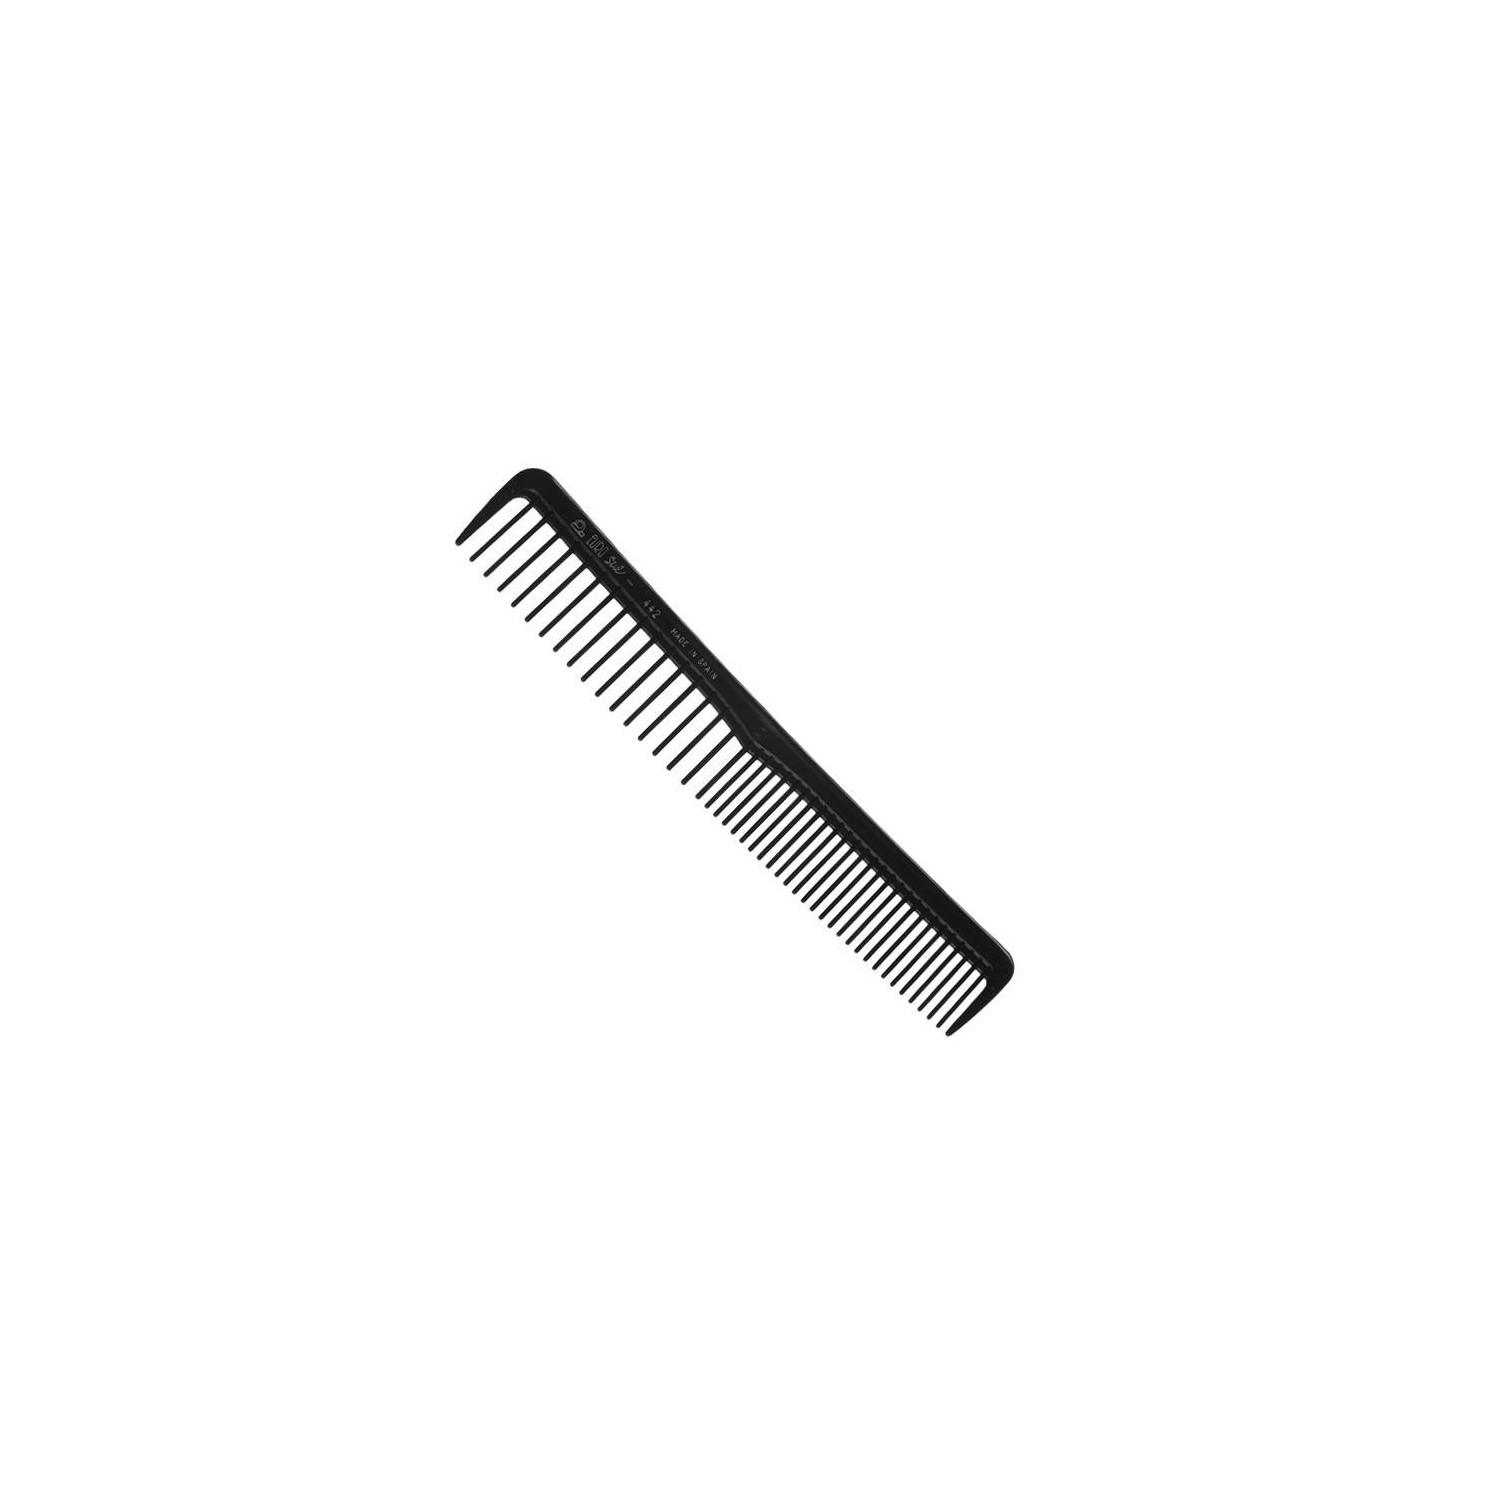 Eurostil Comb Tips Special (00442)